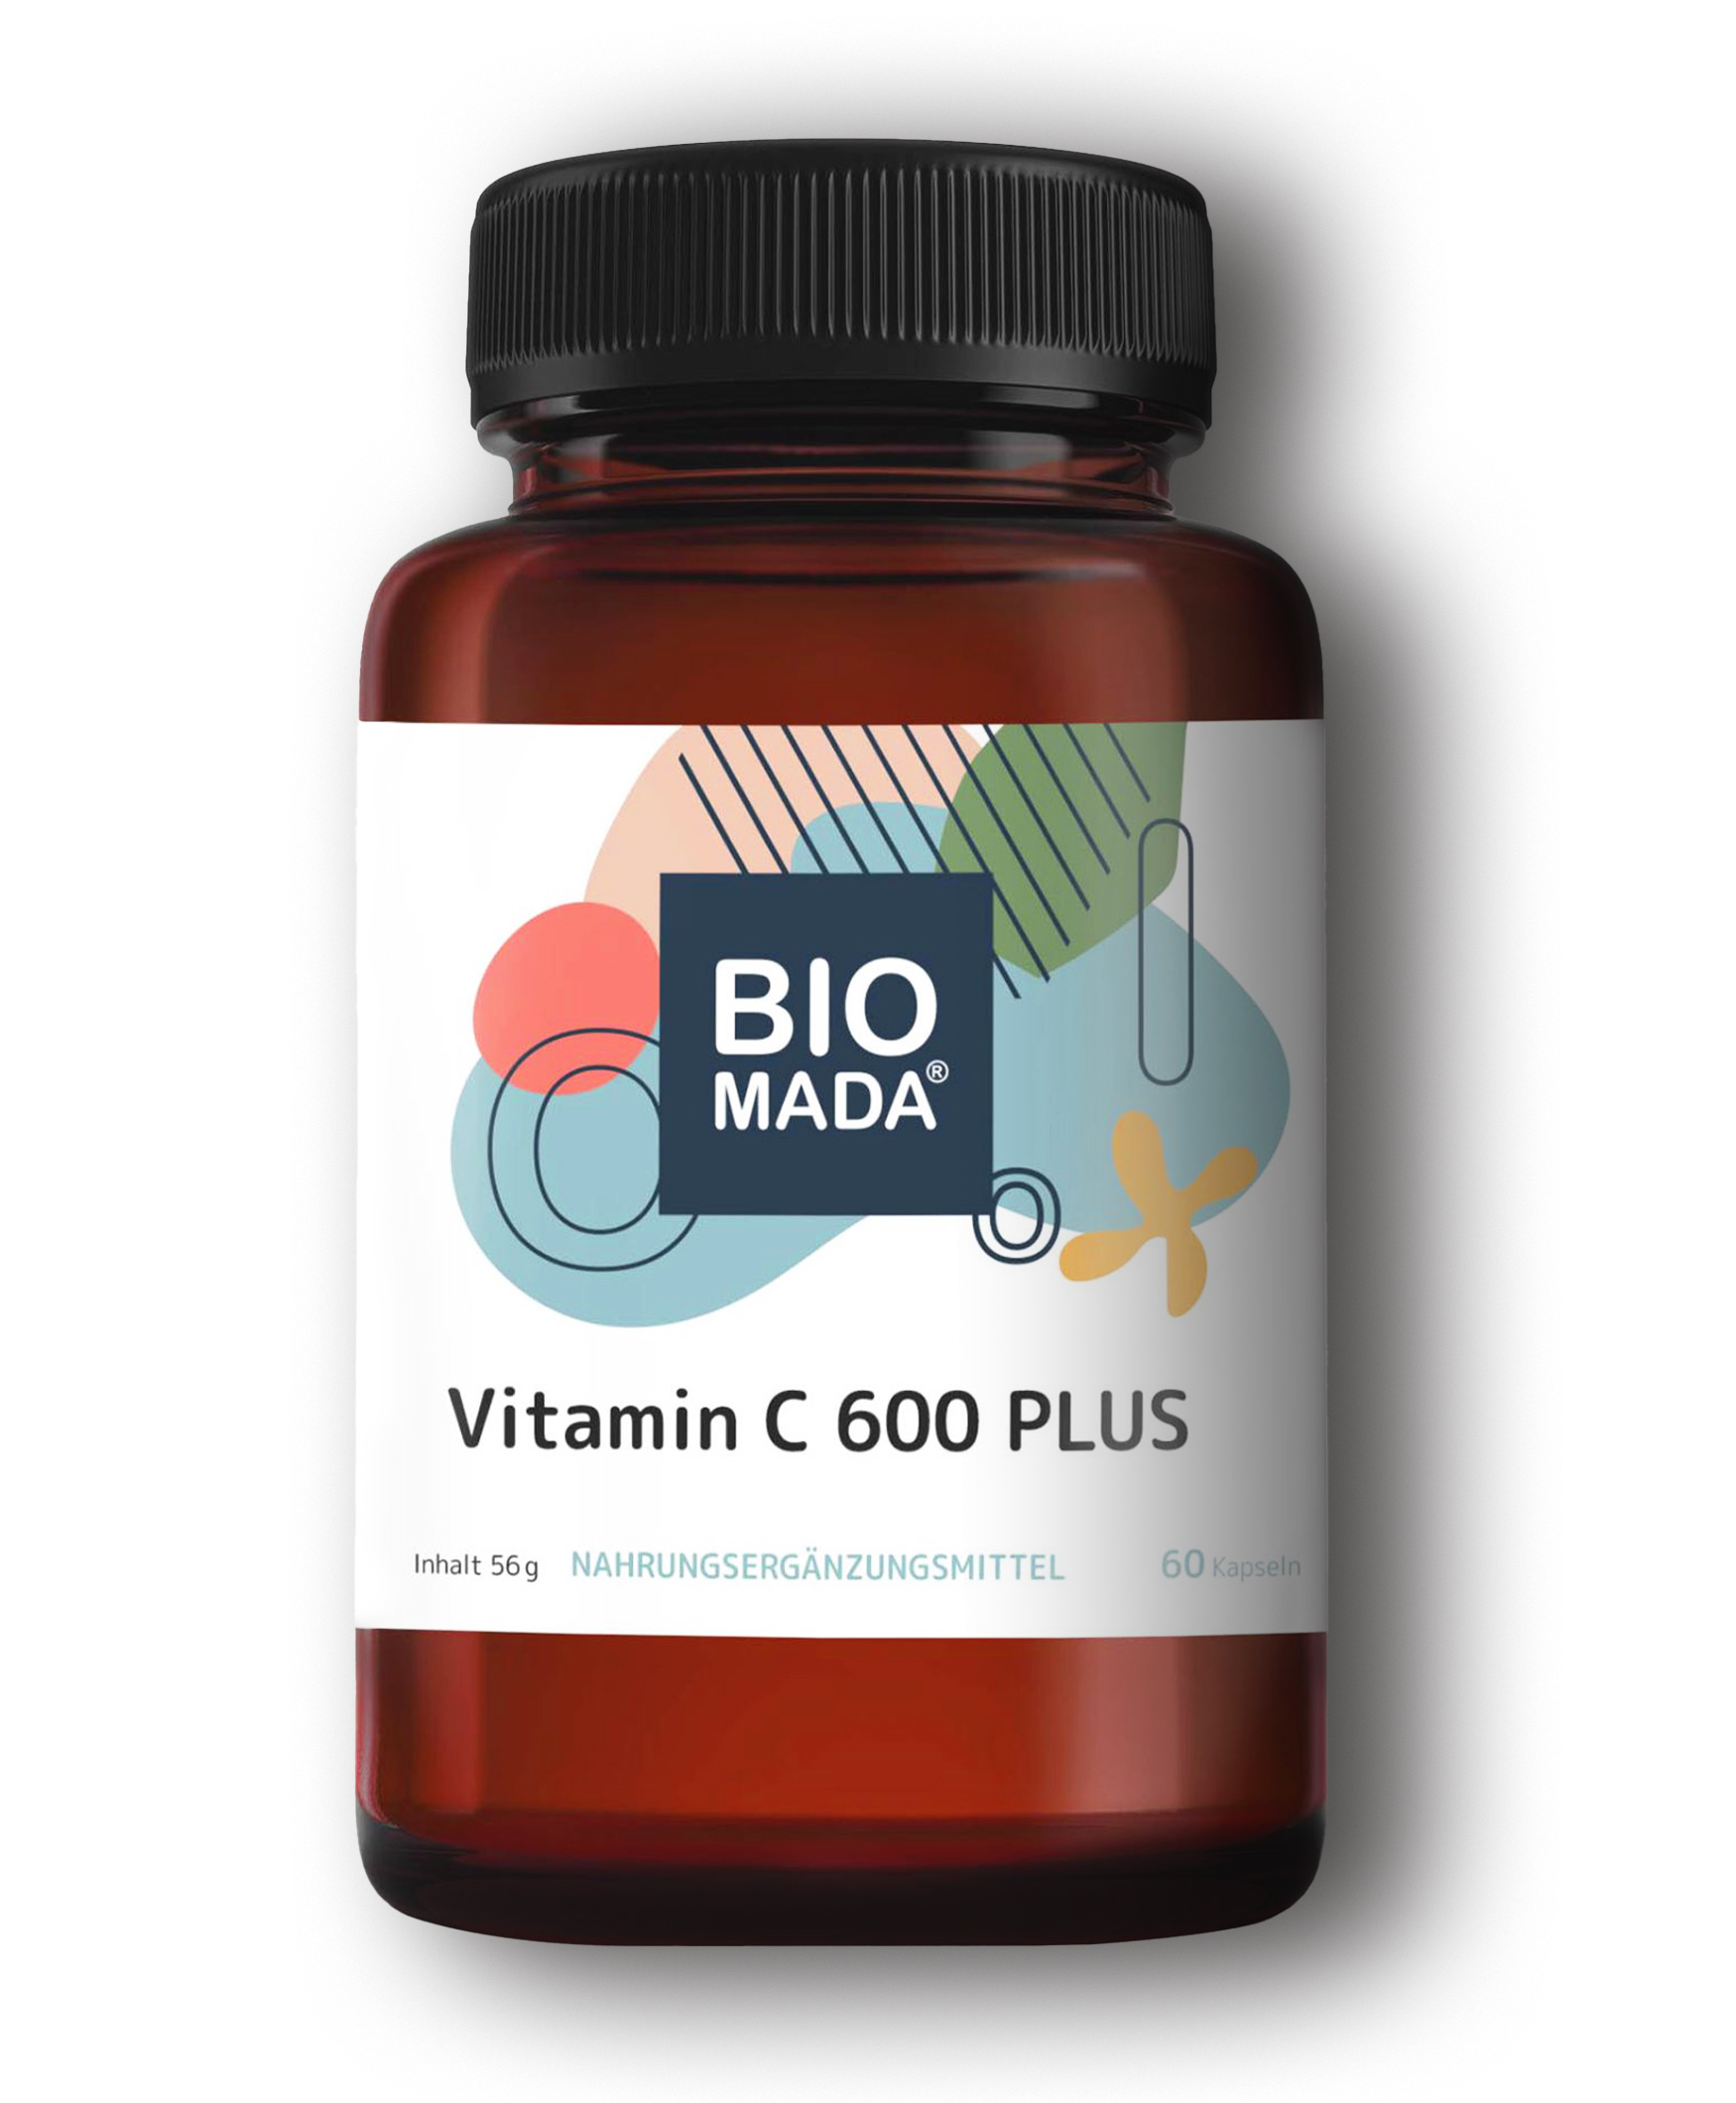 Vitamin C 600 PLUS